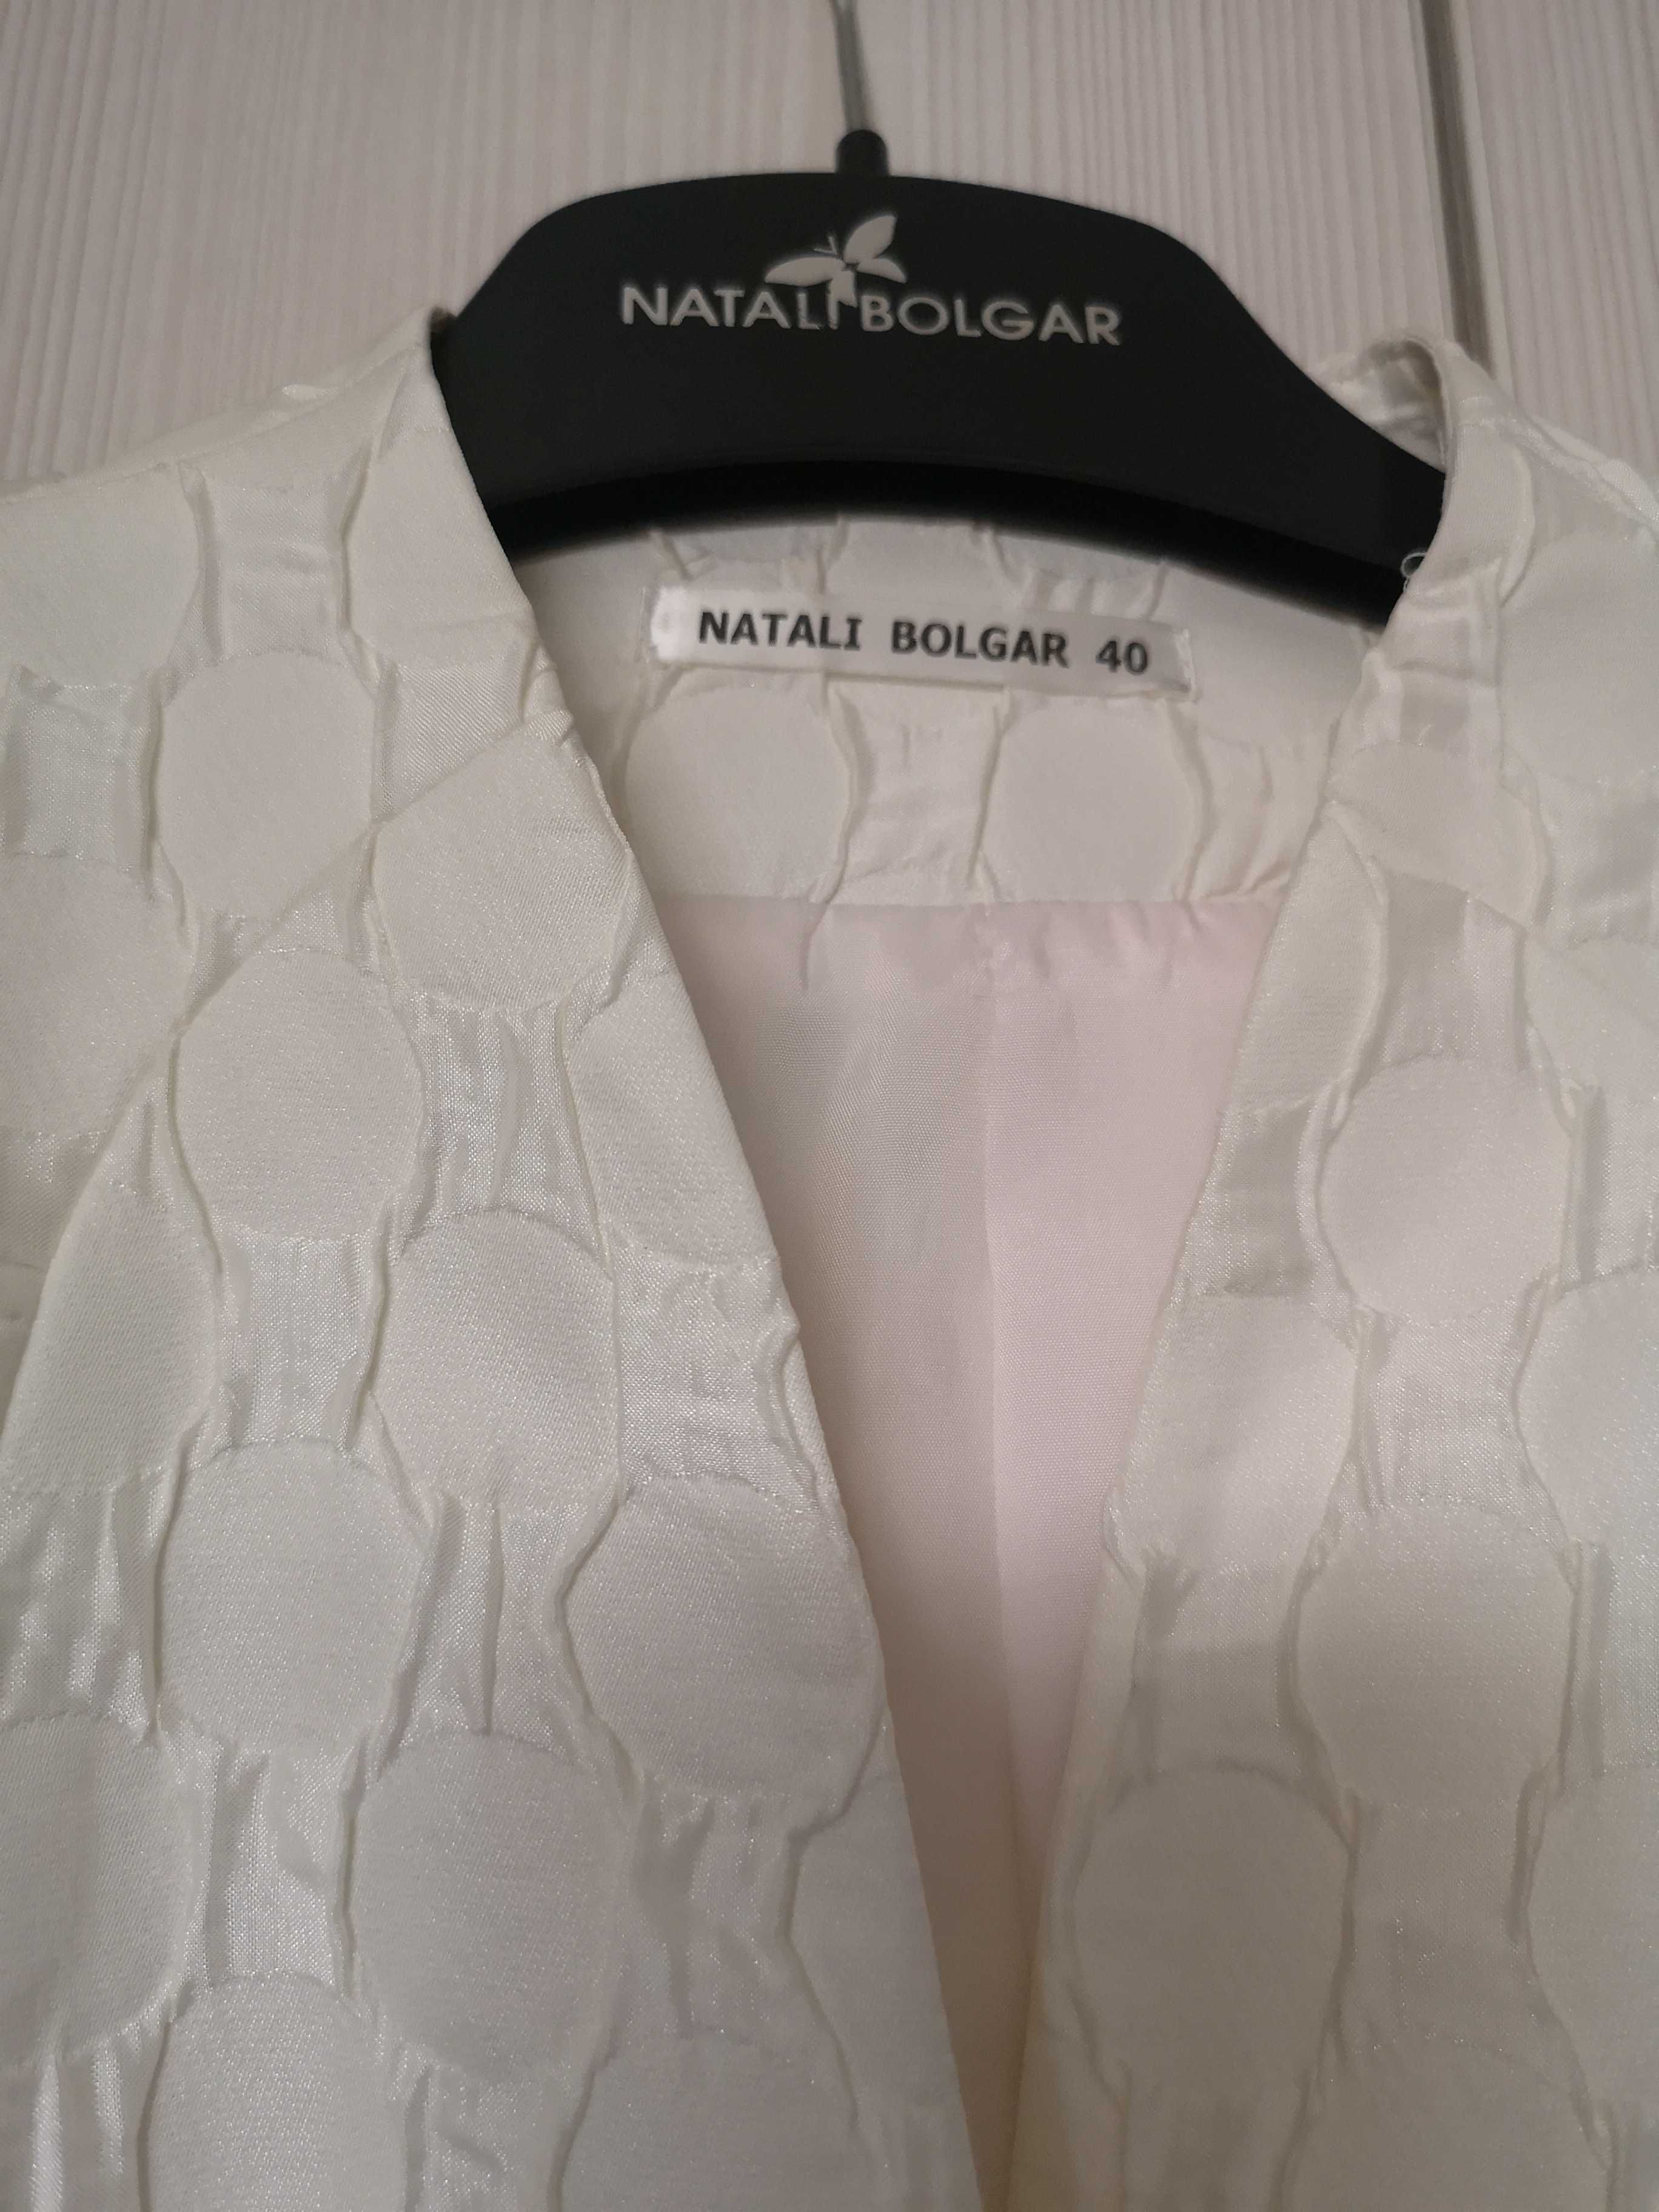 Нарядный костюм - платье и пиджак, Natalie bolgar